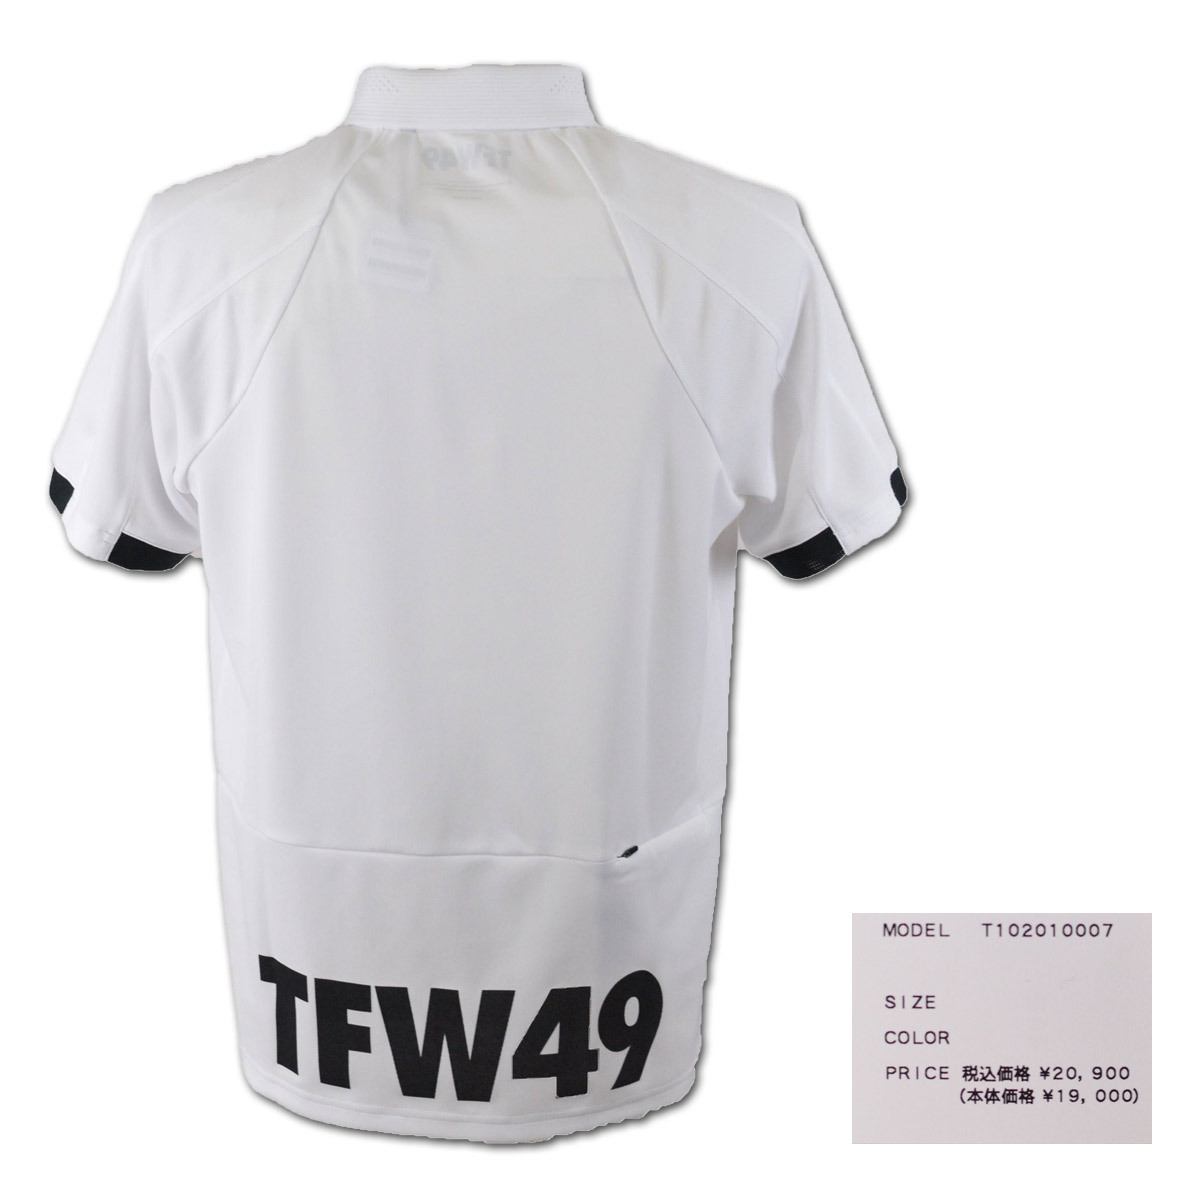 TFW49 メンズ 半袖ポロシャツ (M)(L)(LL) junhashimoto ジュンハシモト ゴルフウェア t102010007